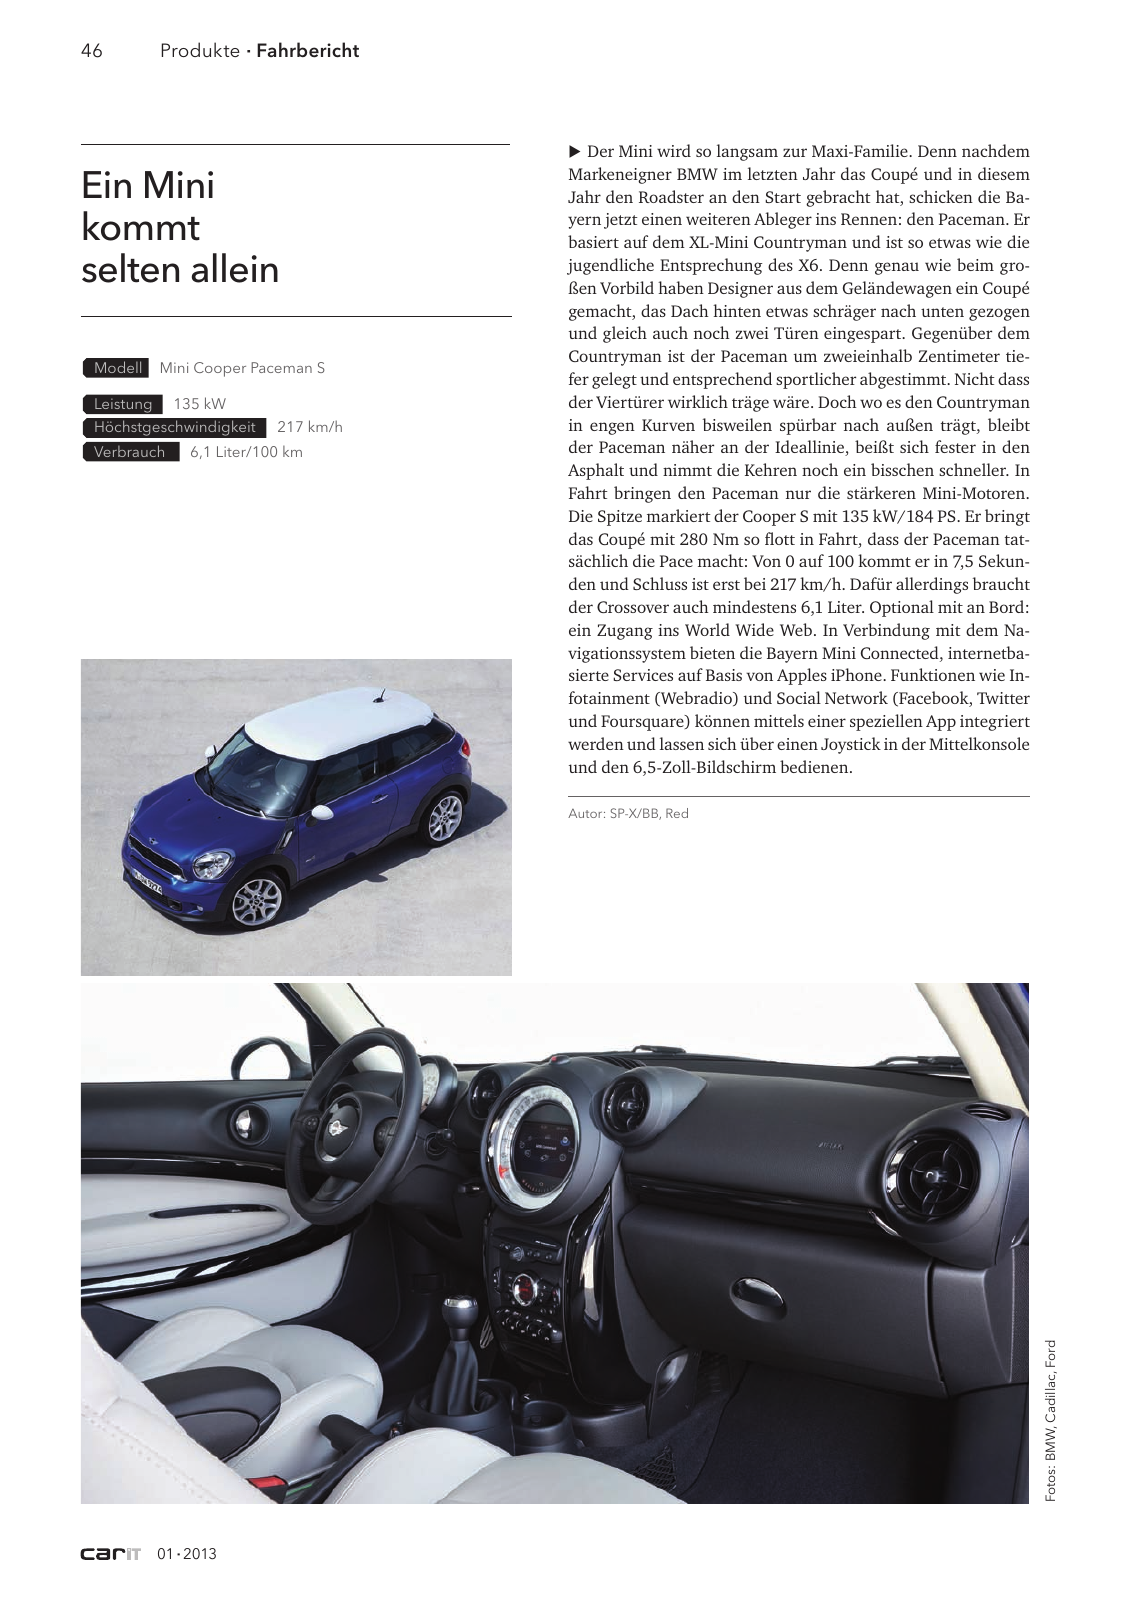 Vorschau car IT 1 2013 Seite 46